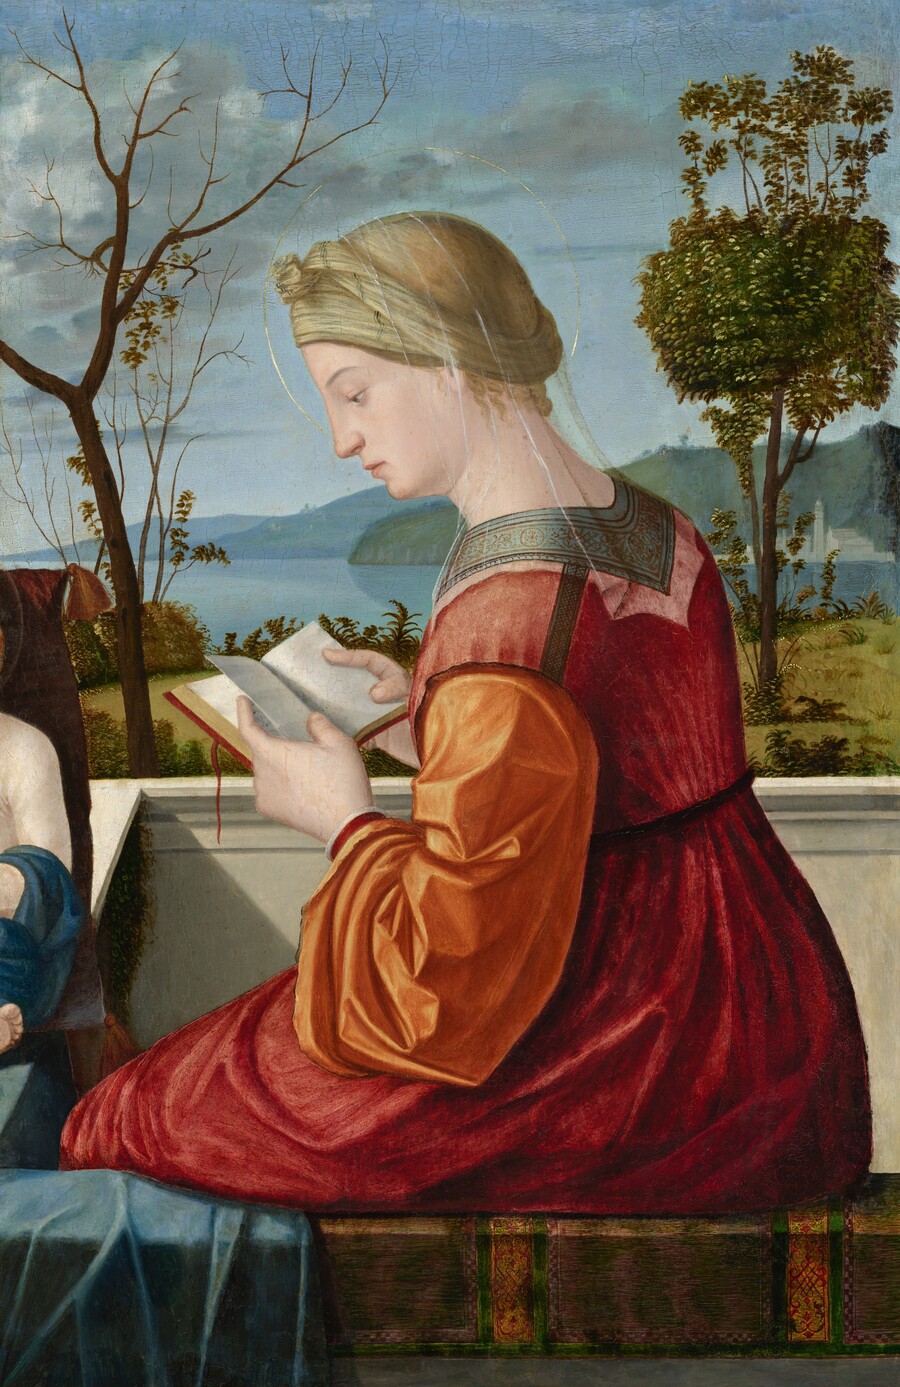 Vittore Carpaccio, The Virgin Reading, c. 1505